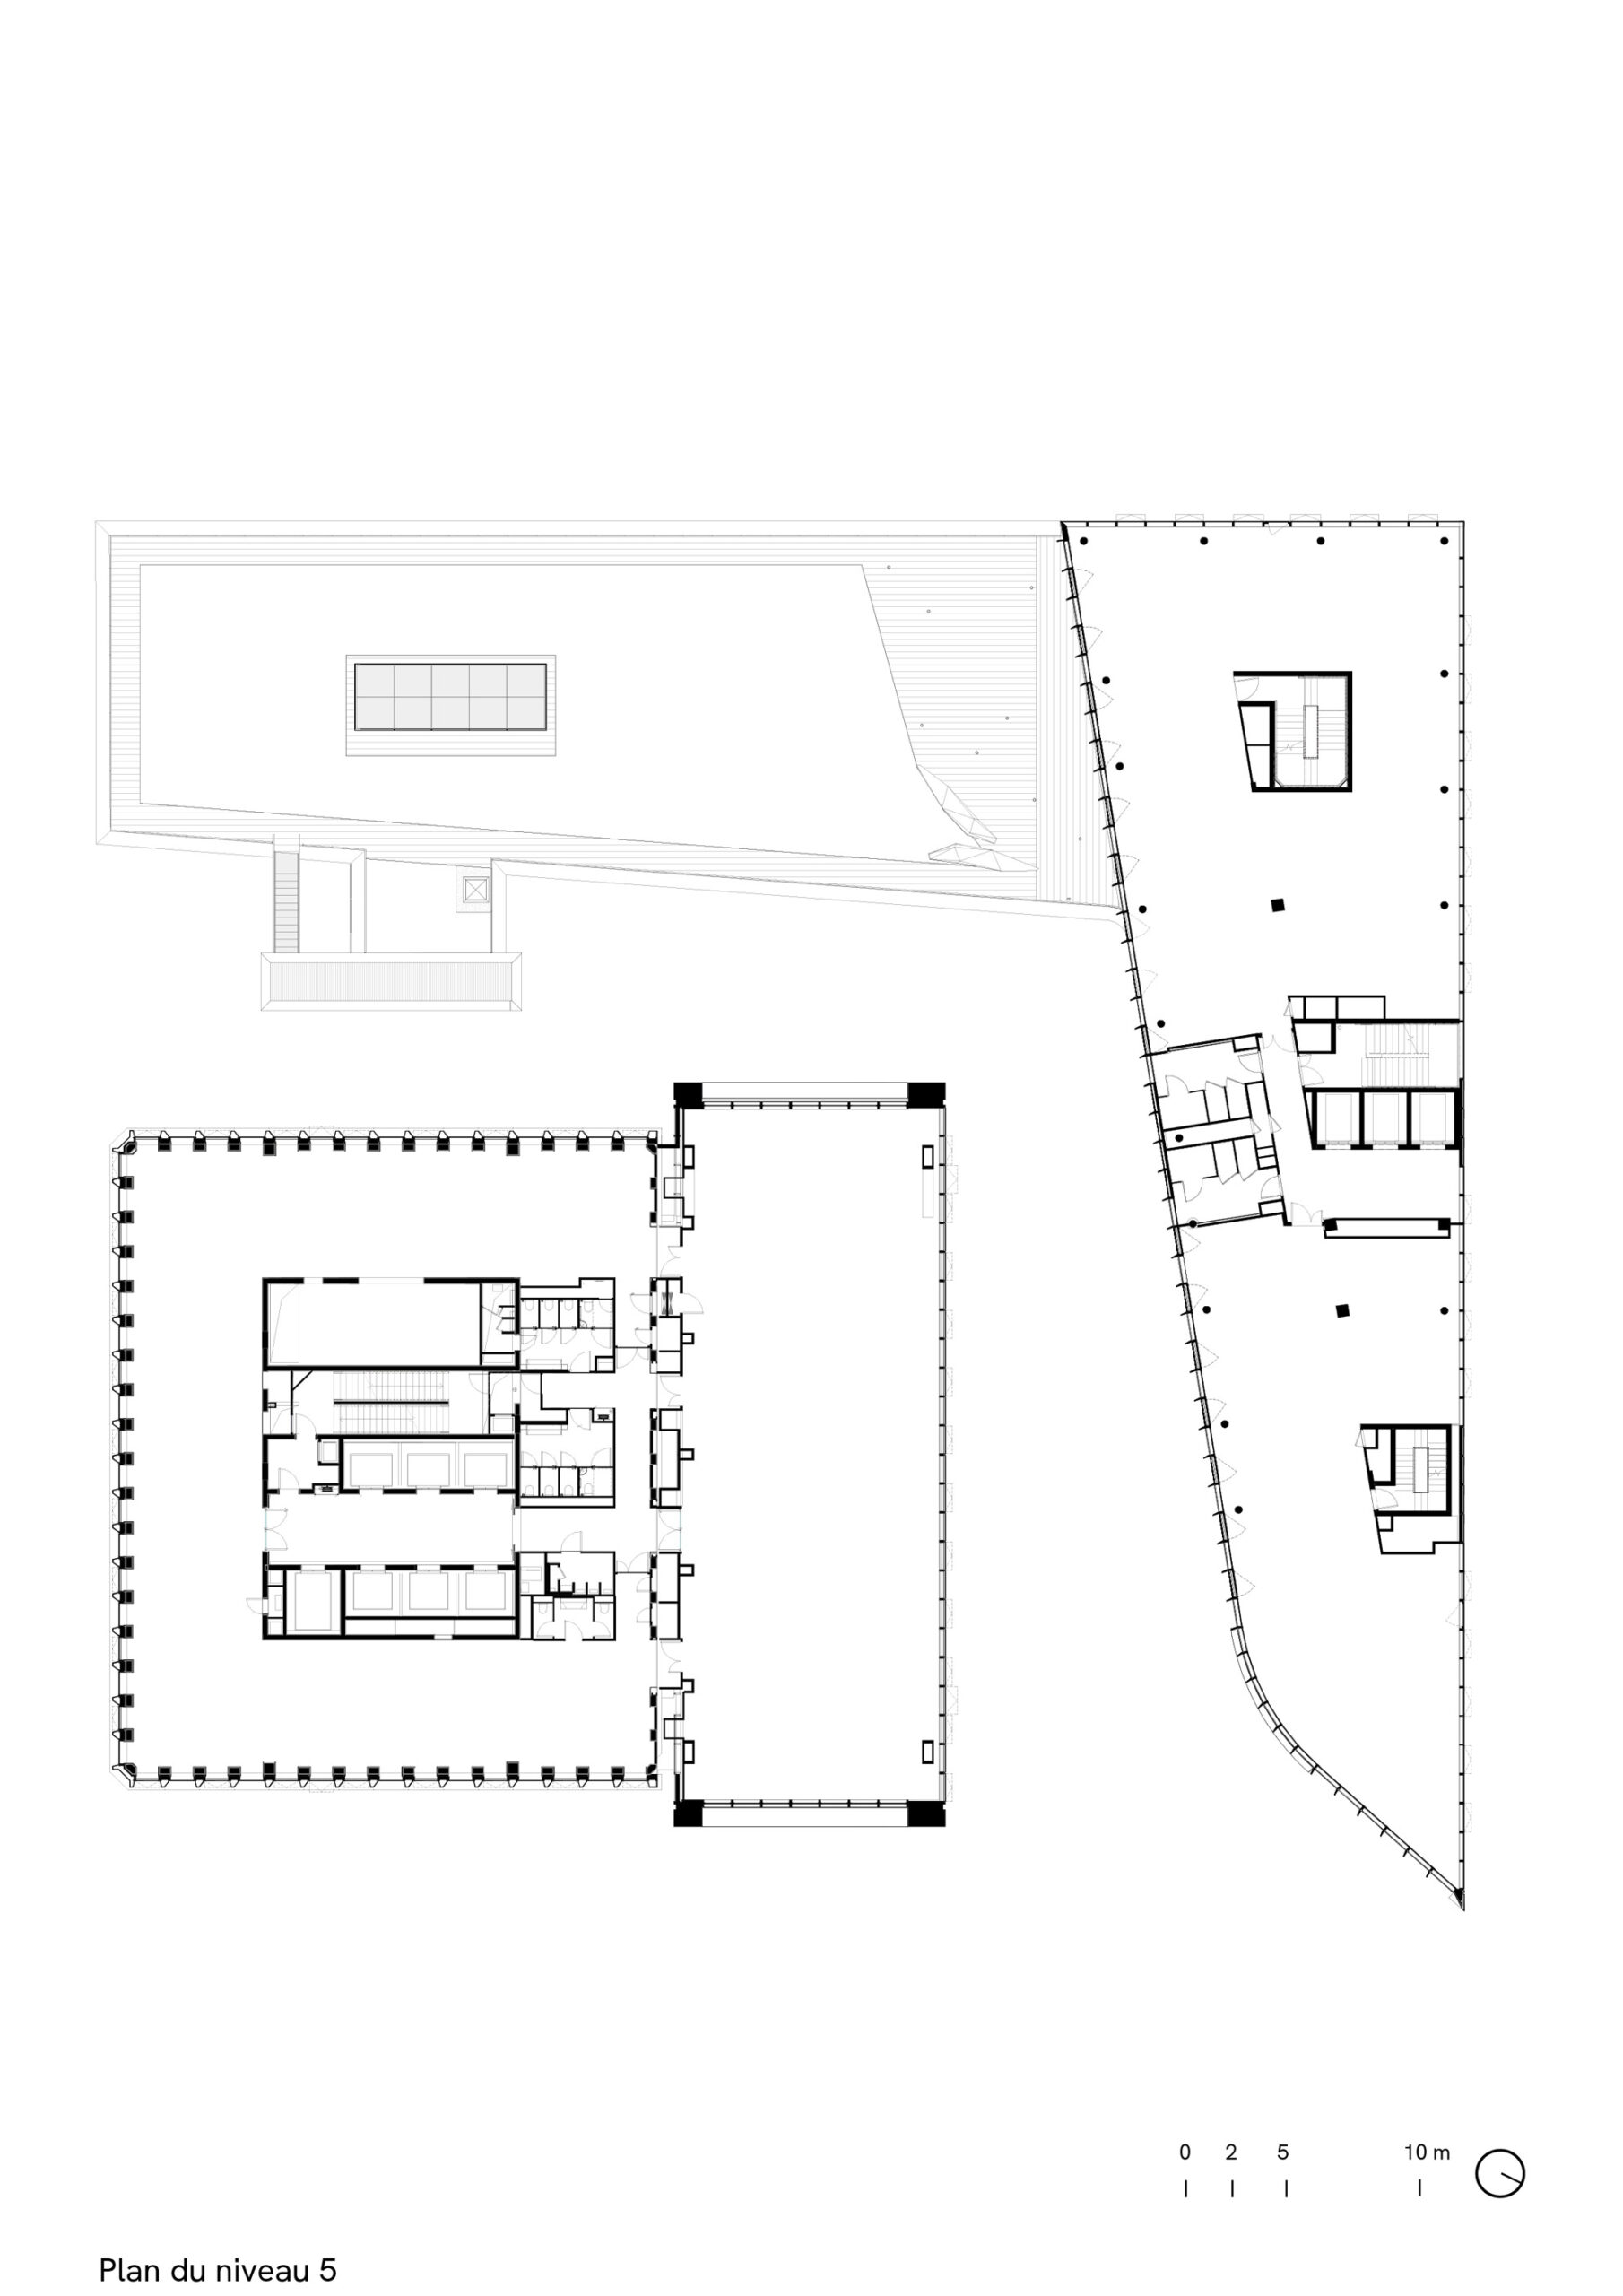 Silex2, Lyon, blueprint level 5